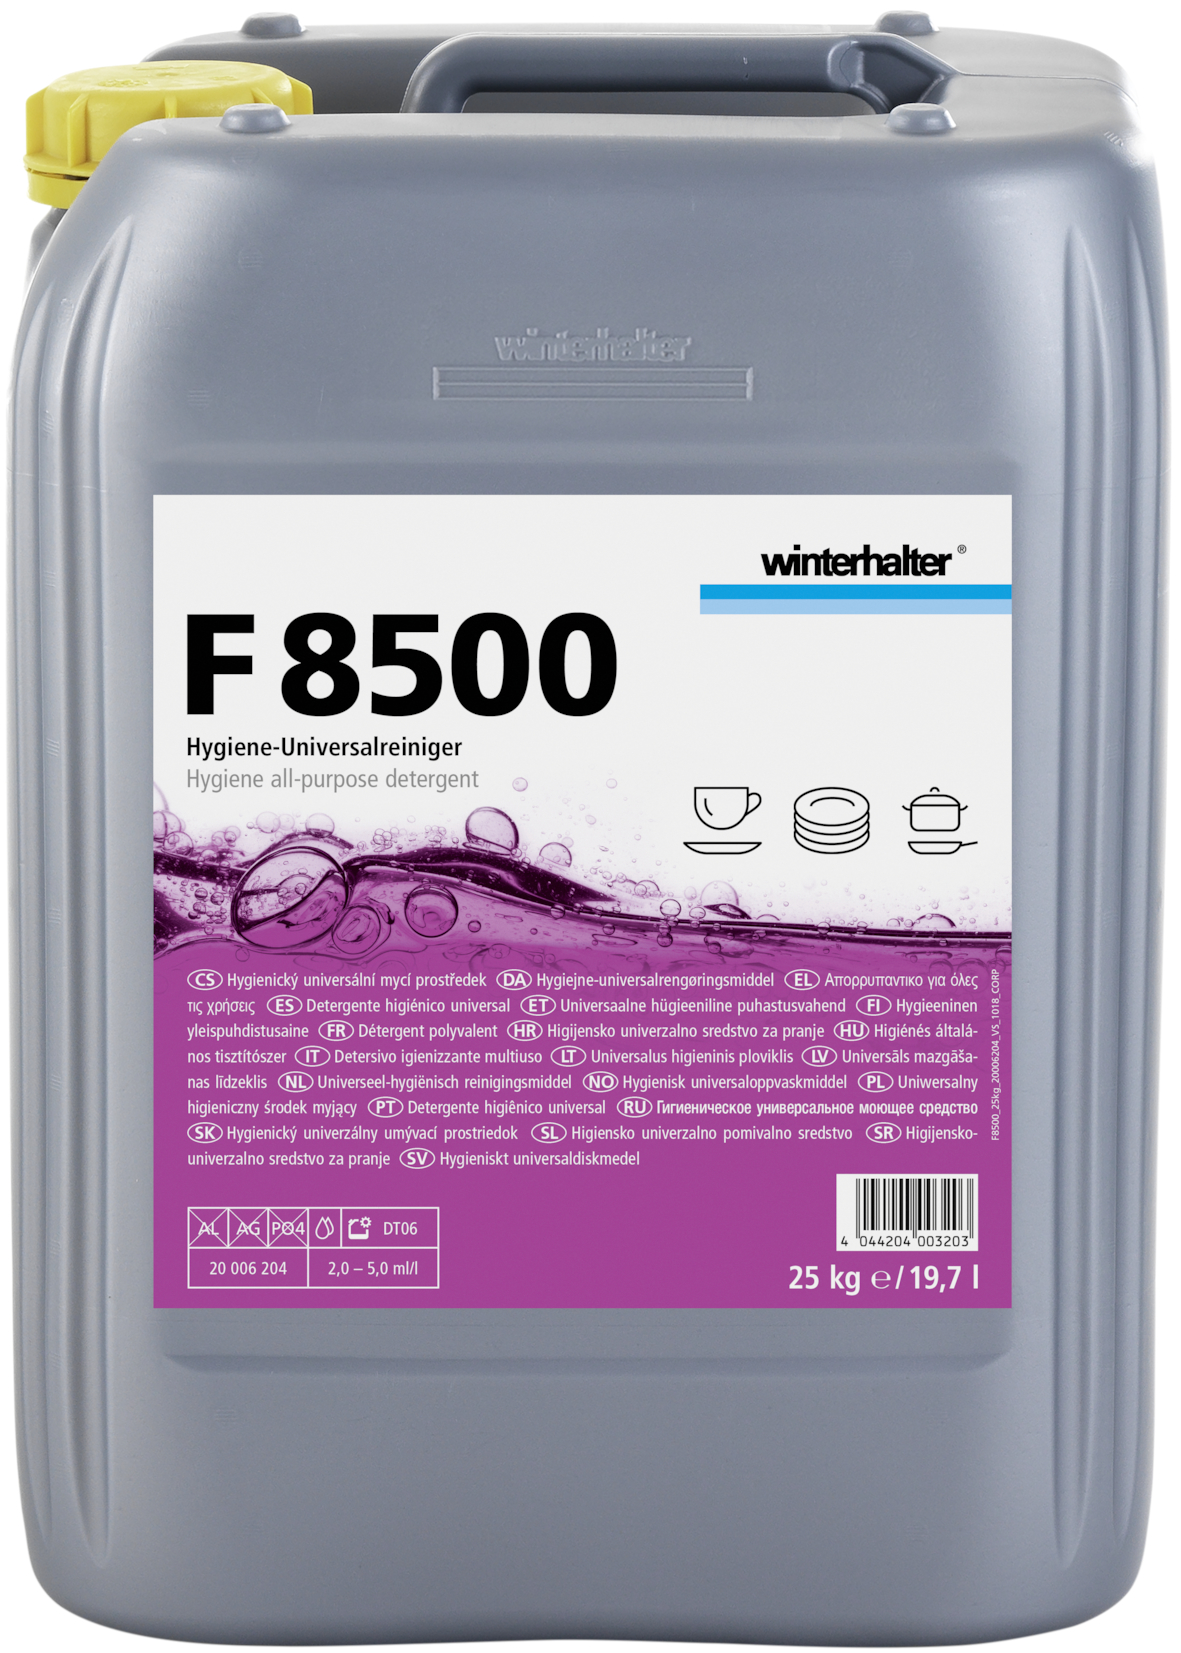 Winterhalter F 8500  reinigingsmiddel